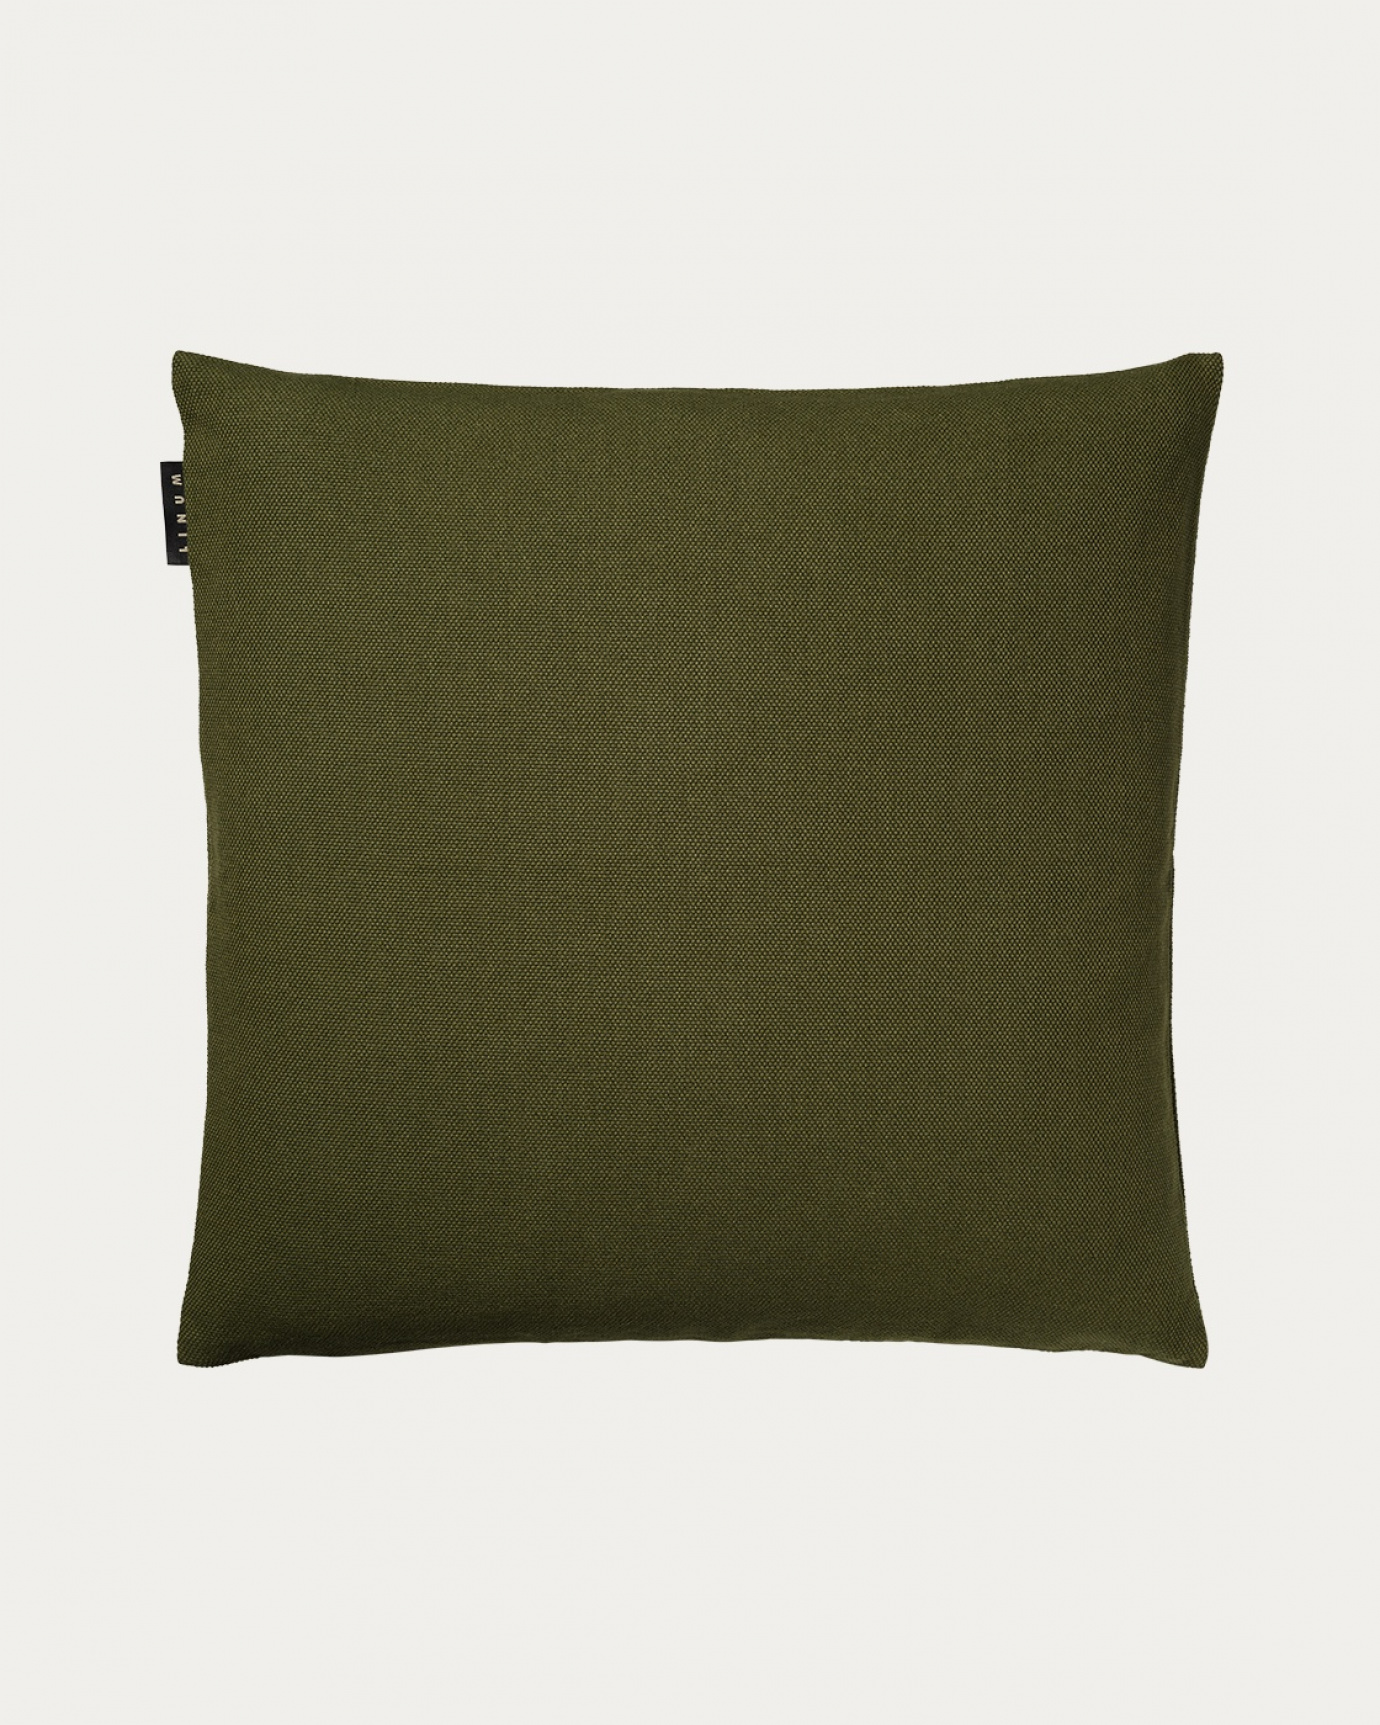 Produktbild dunkles olivgrün PEPPER Kissenhülle aus weicher Baumwolle von LINUM DESIGN. Einfach zu waschen und langlebig für Generationen. Größe 50x50 cm.